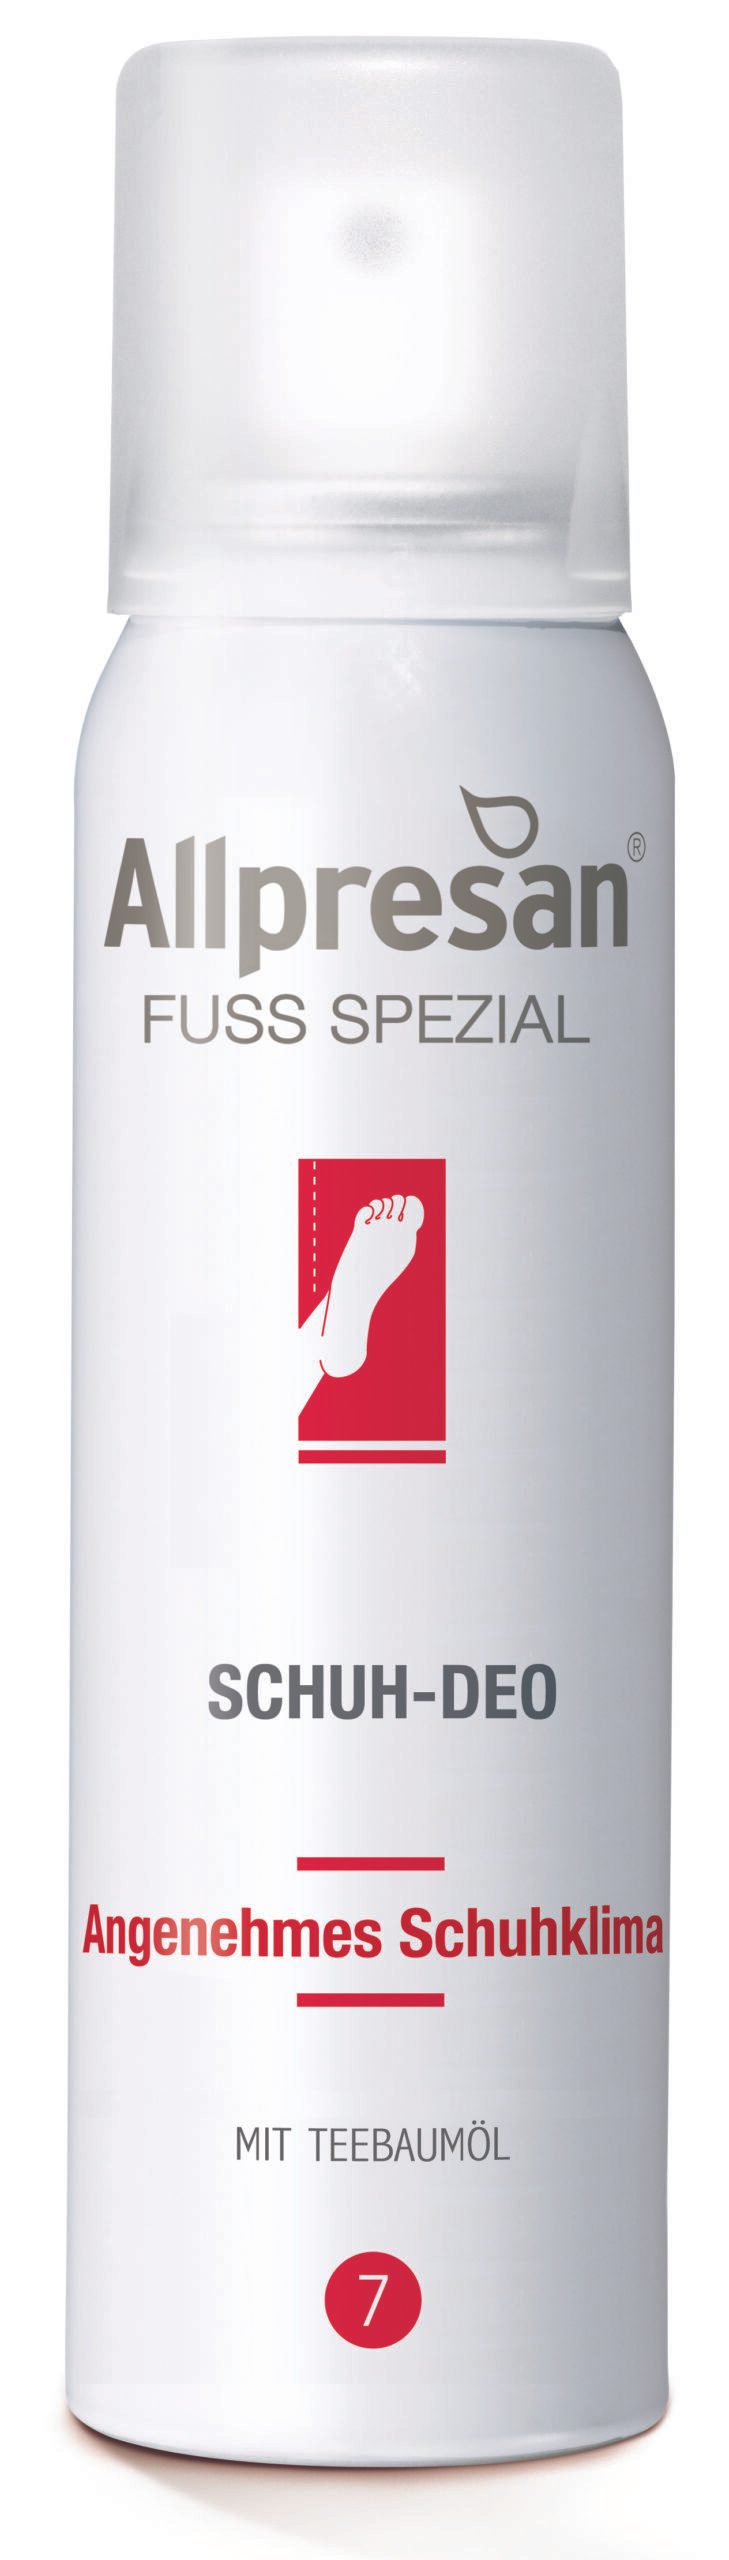 Allpresan Fuß Spezial Schuh-Deo -Pilz-empfindliche Haut und Nägel - 100ml-0